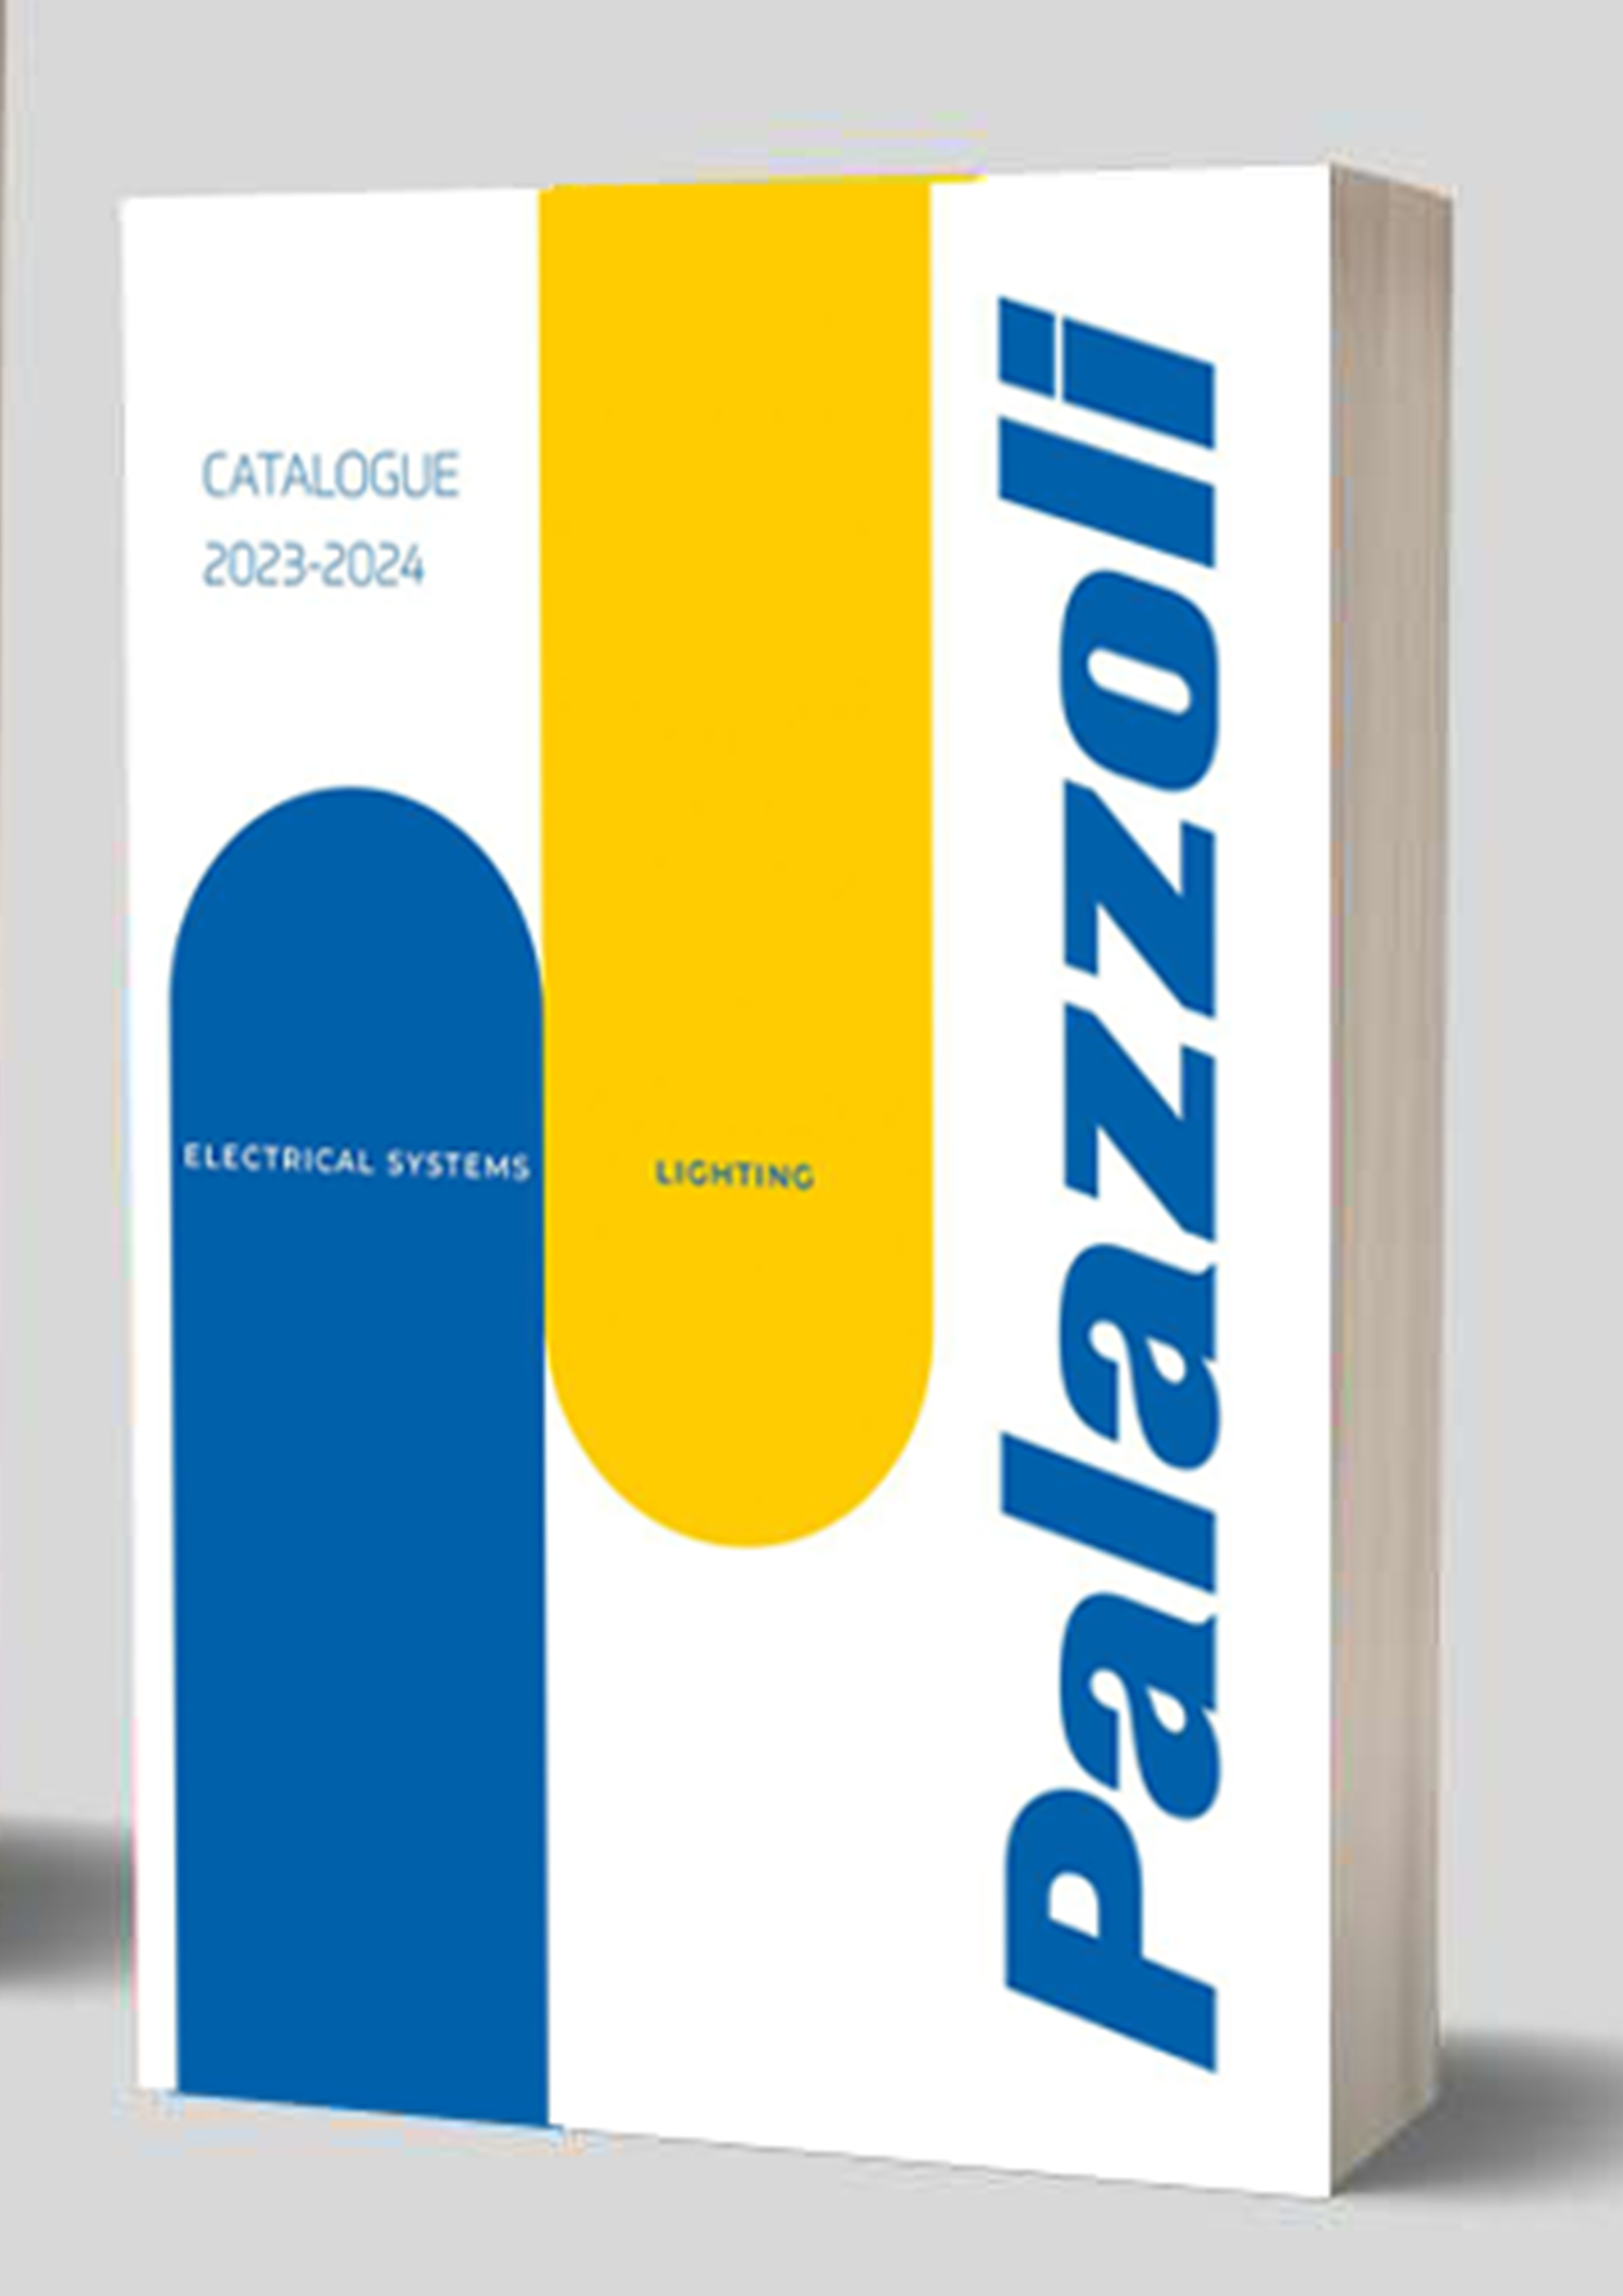 Novo catálogo da palazzoli 2023-2024